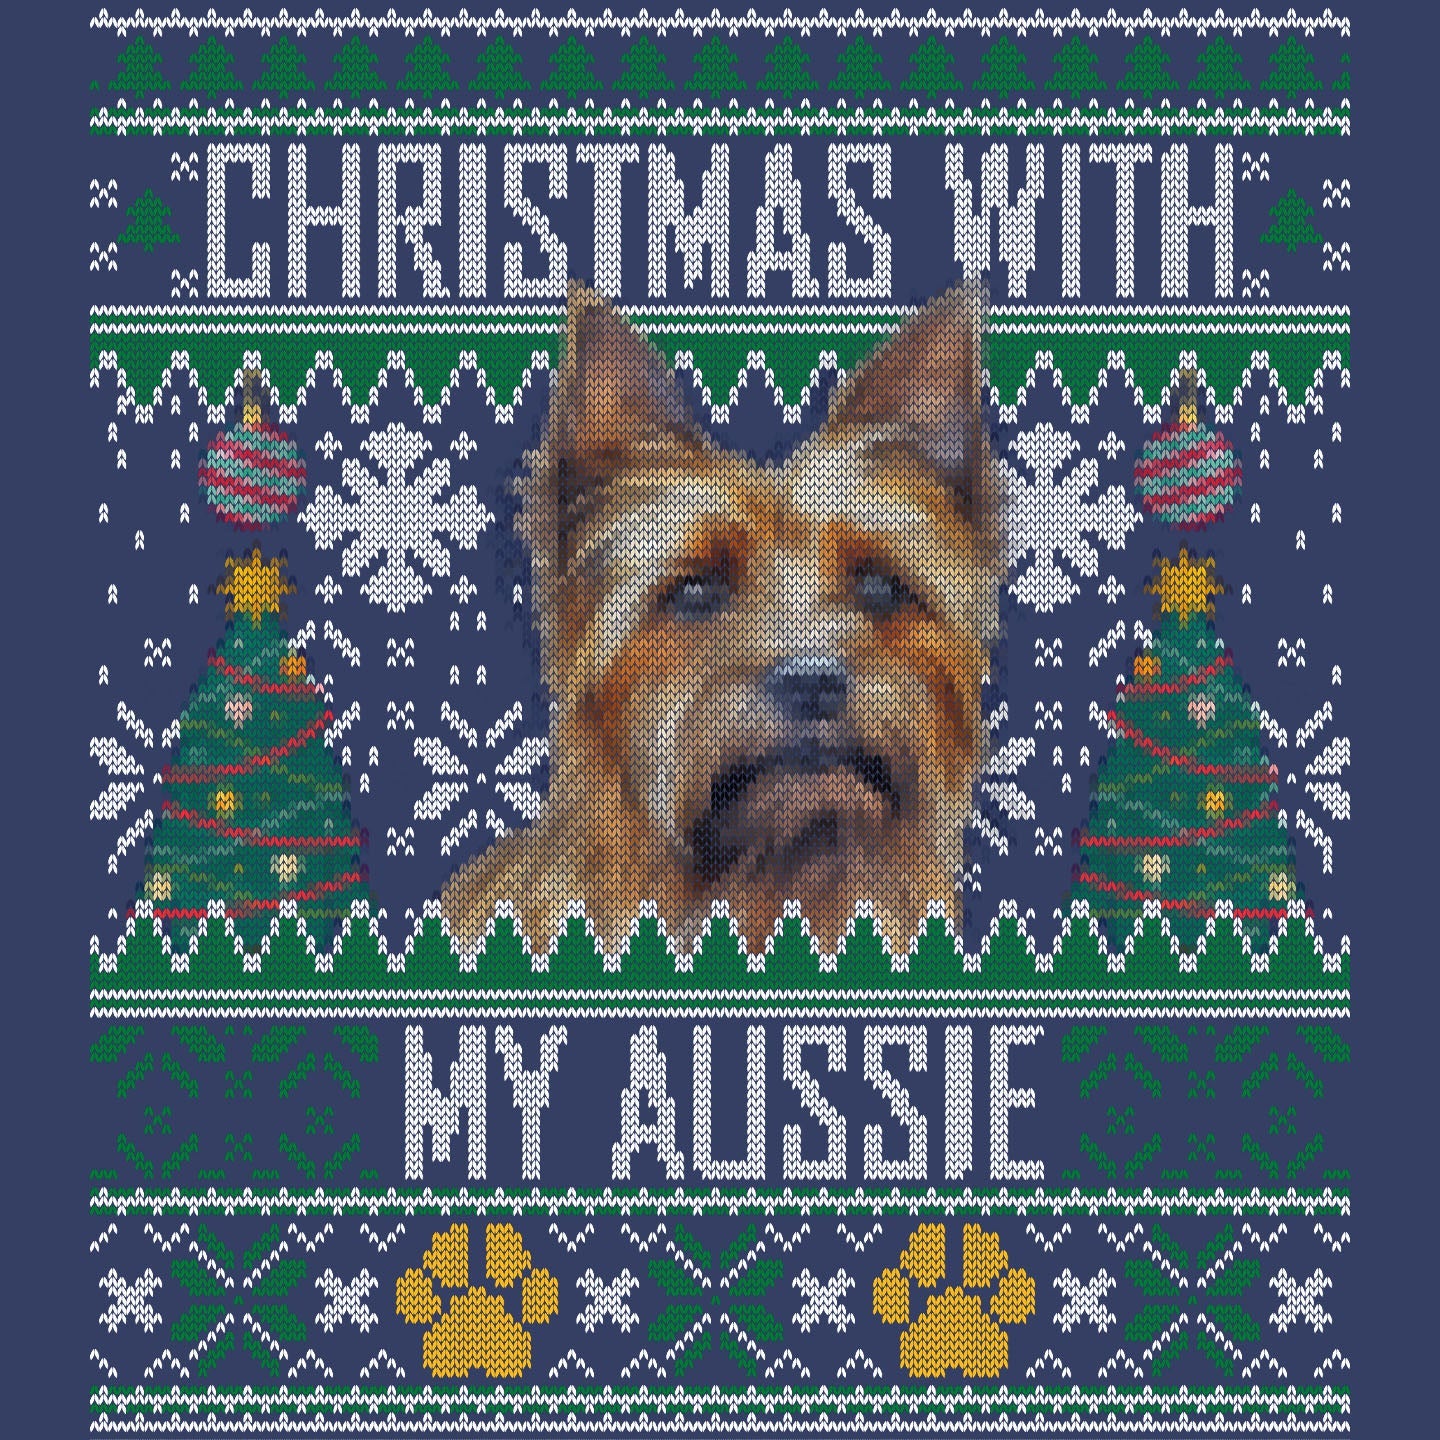 Ugly Sweater Christmas with My Australian Terrier - Adult Unisex Crewneck Sweatshirt